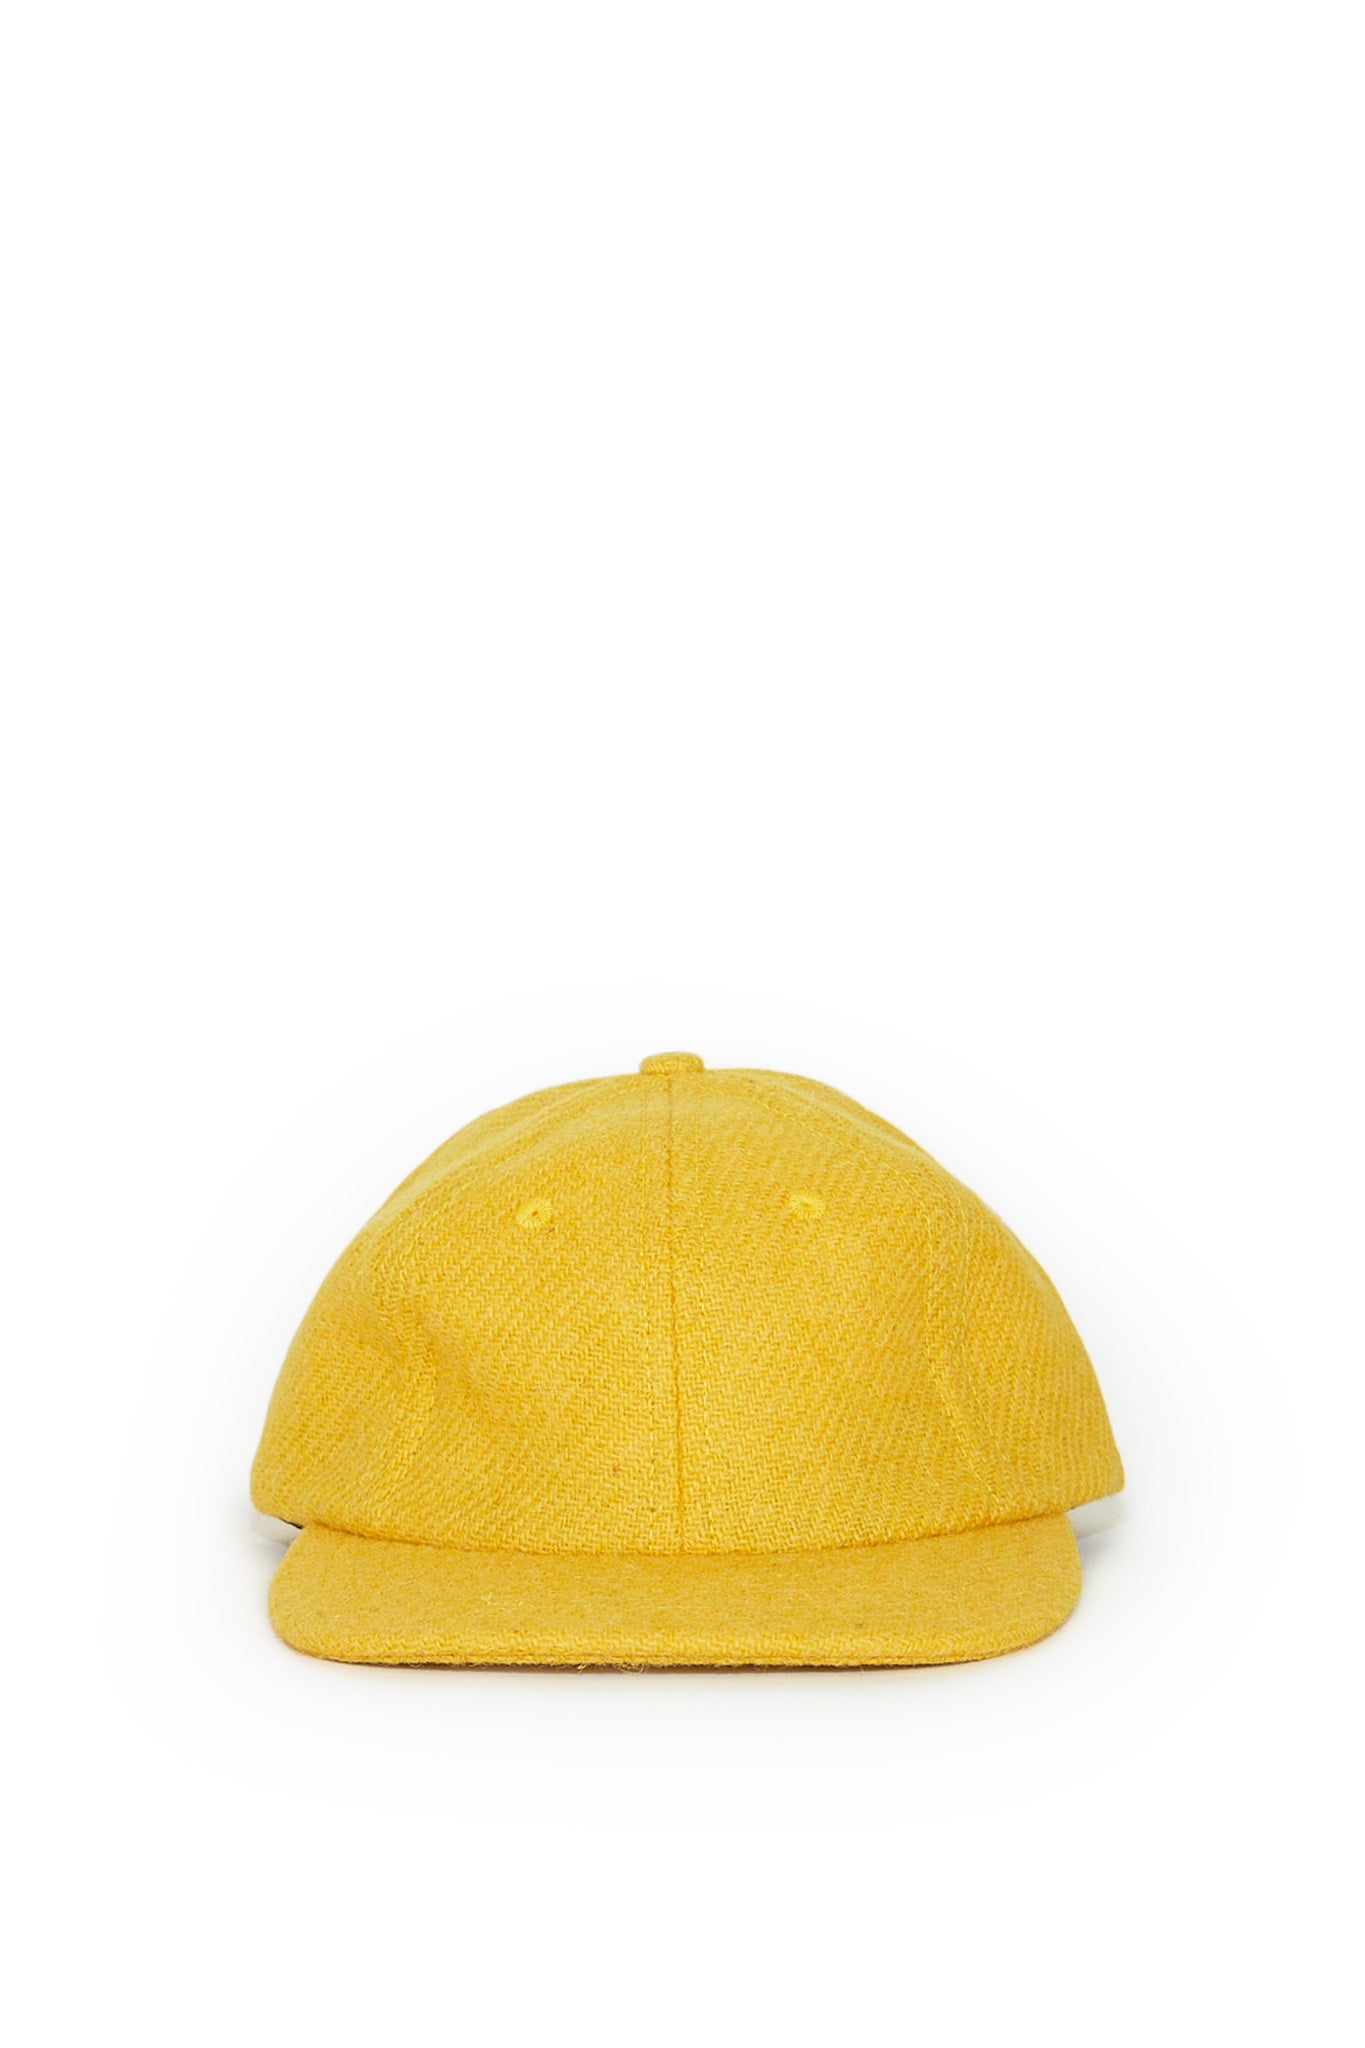 Harris Tweed® Cap - Lemon